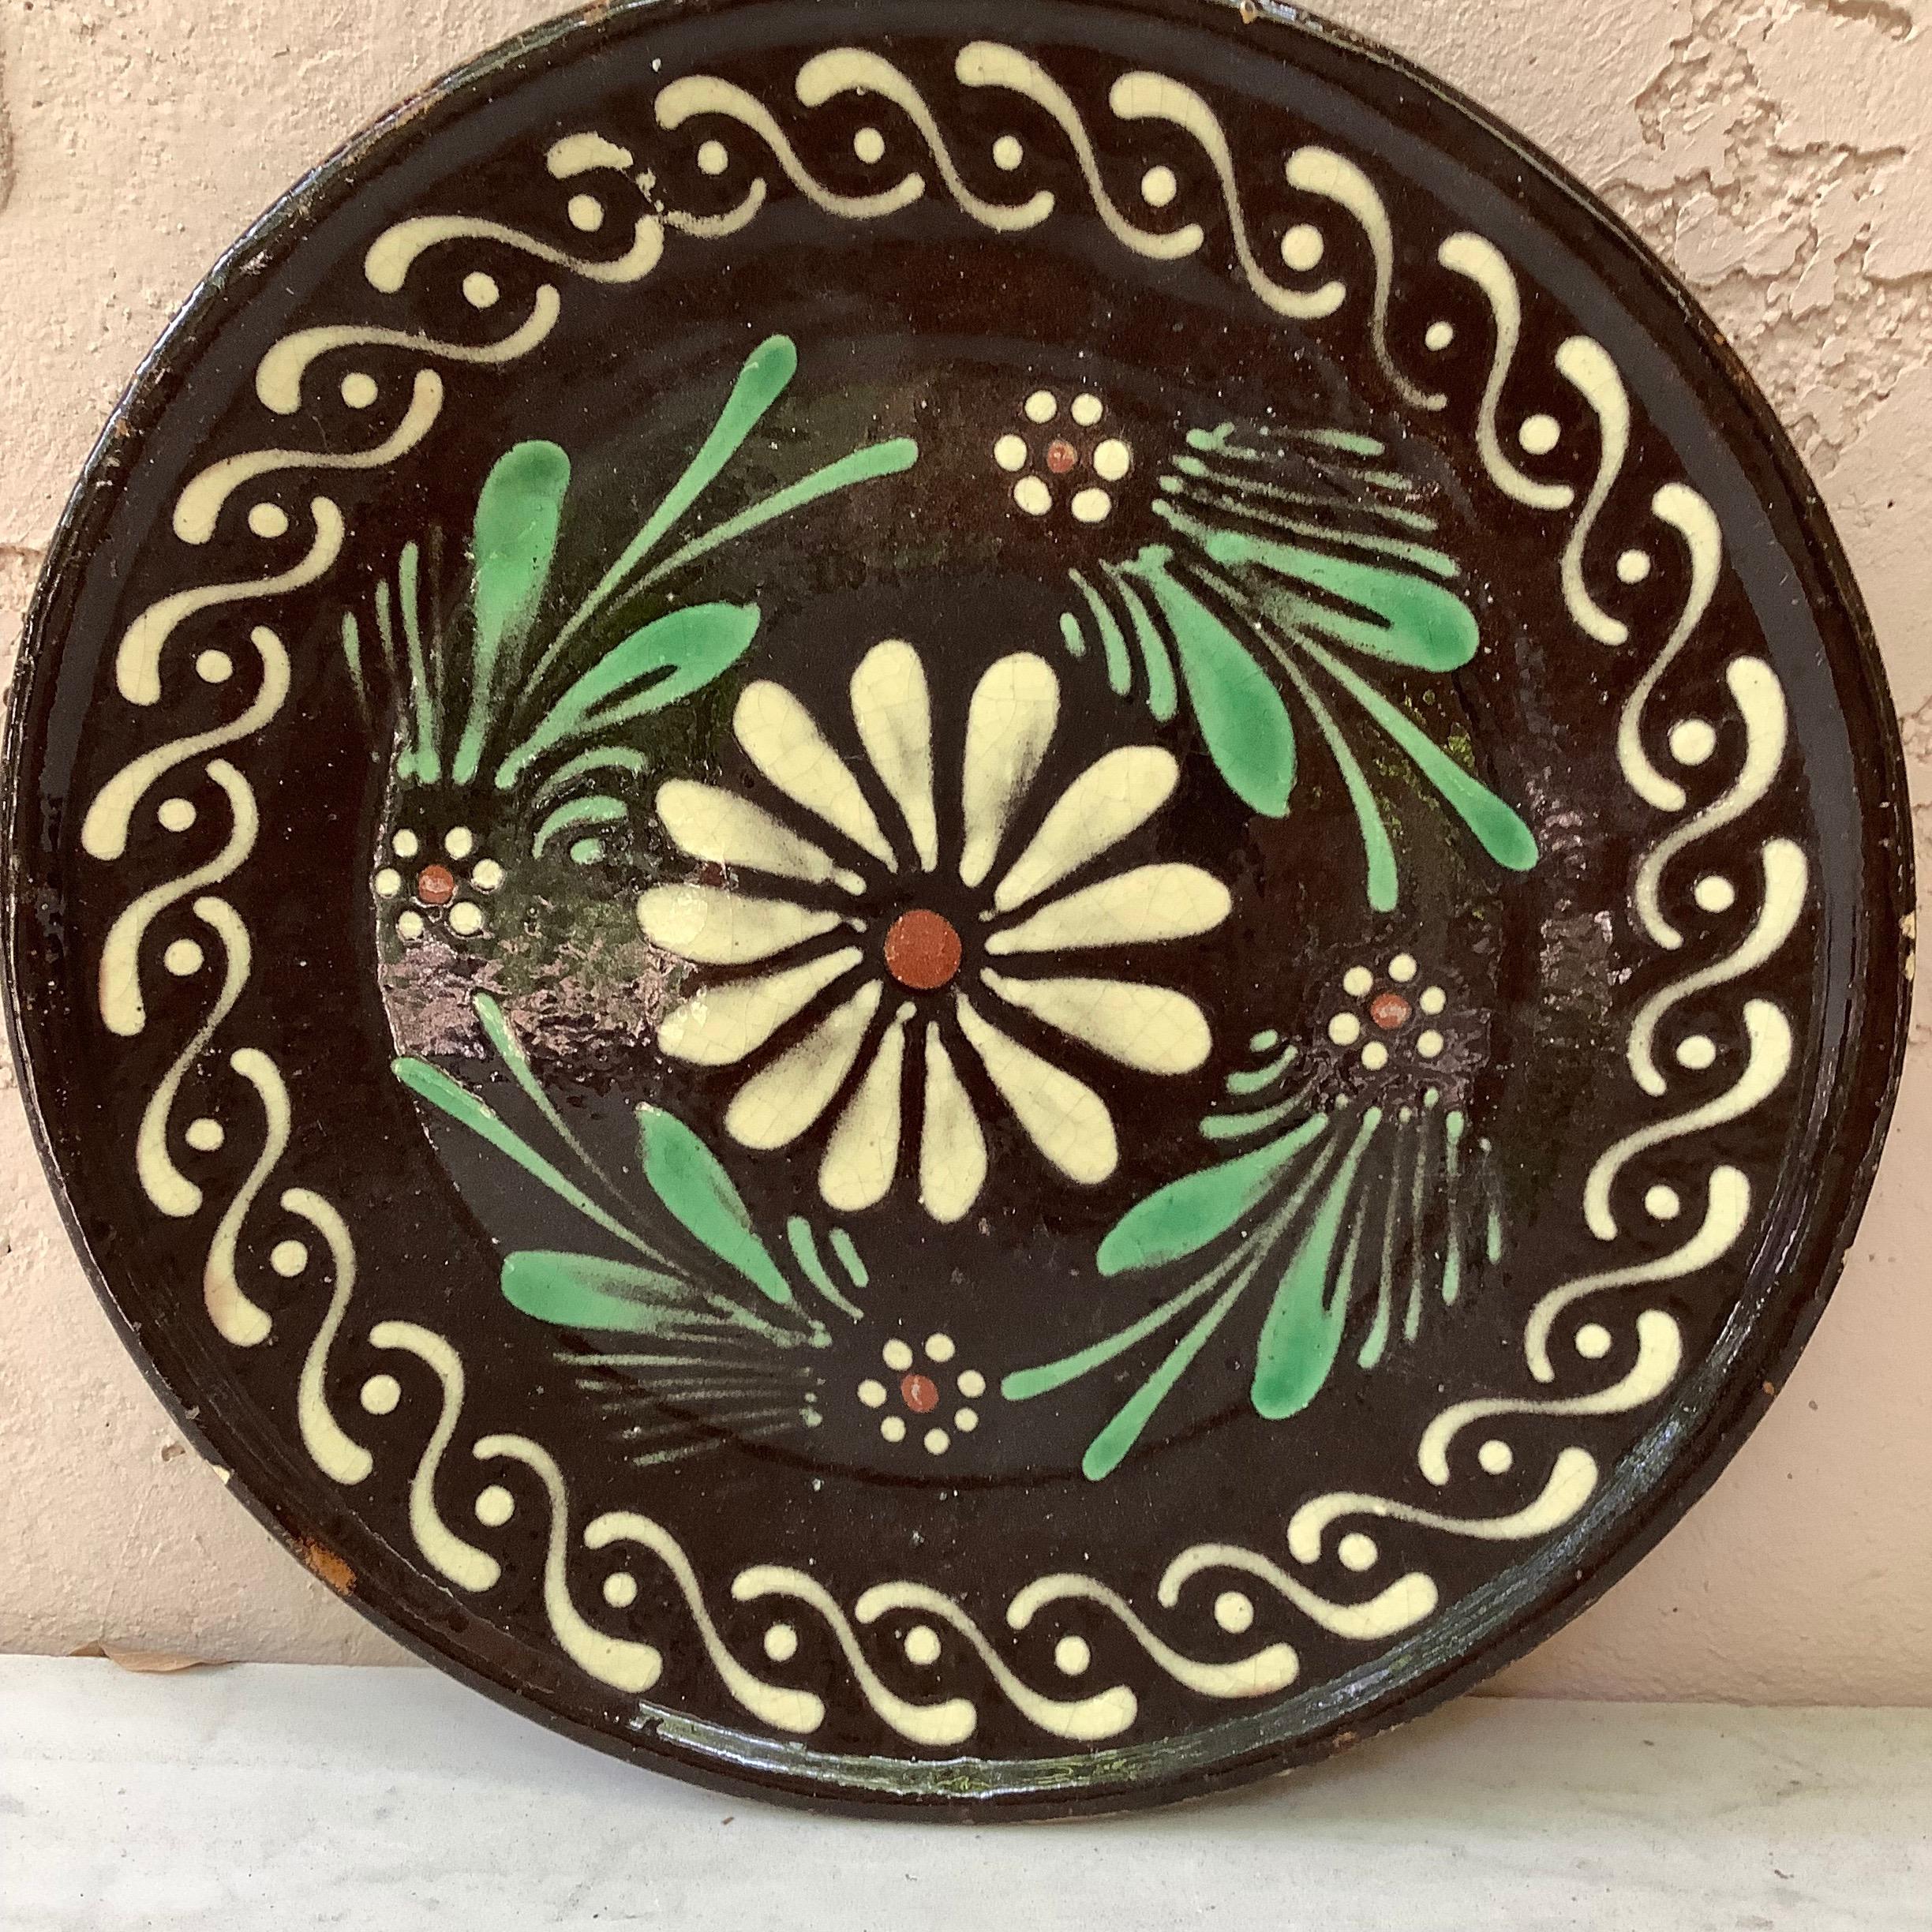 Plato floral de Savoie de cerámica francesa del siglo XIX.
Estilo rural.